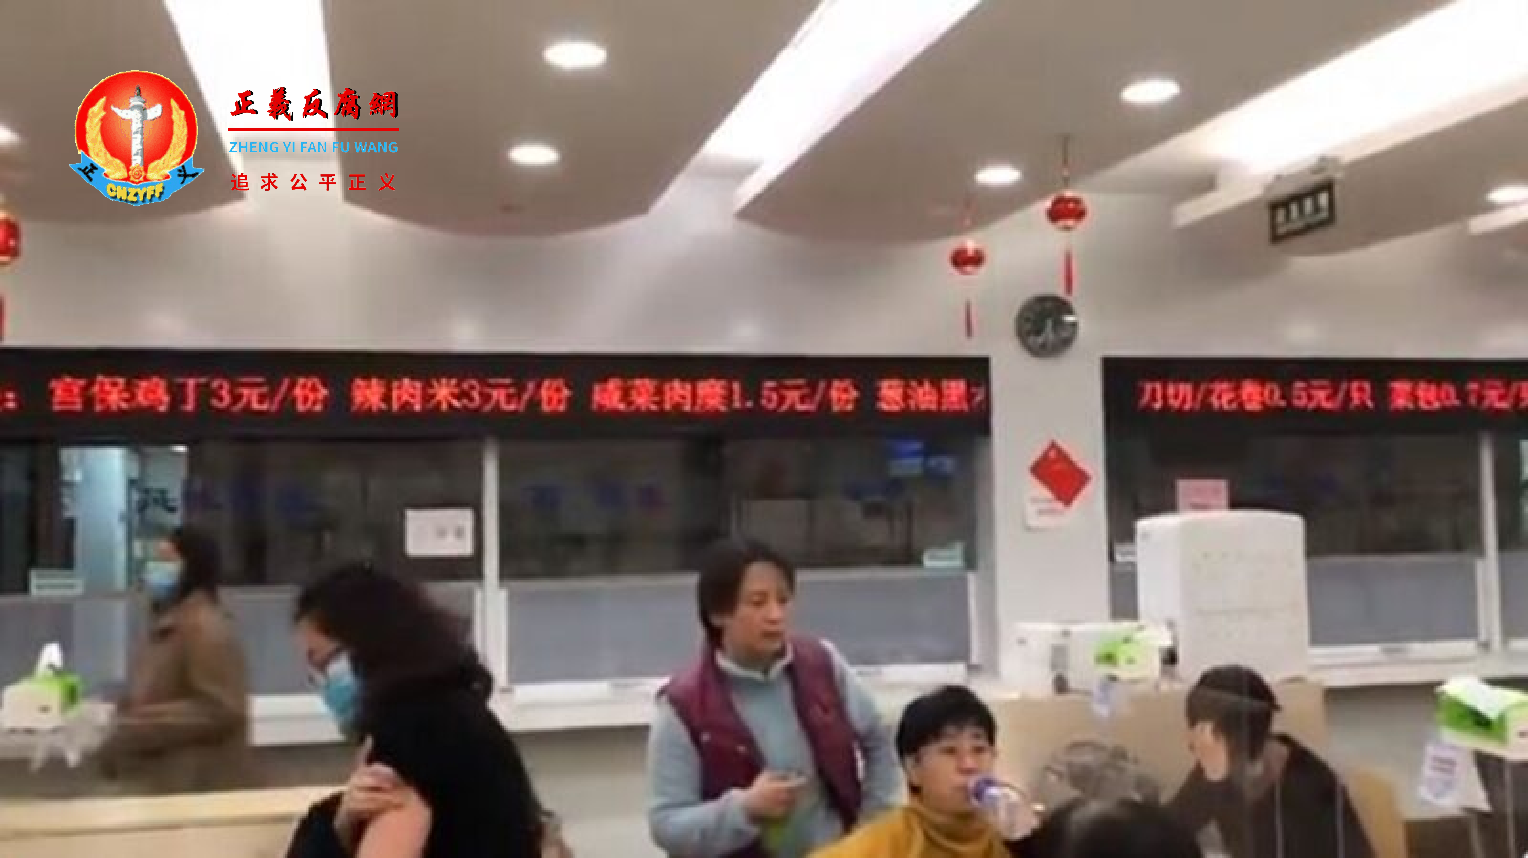 日前，上海黄浦区公务员食堂超低物价在网路上曝光，引起民众公愤。.png